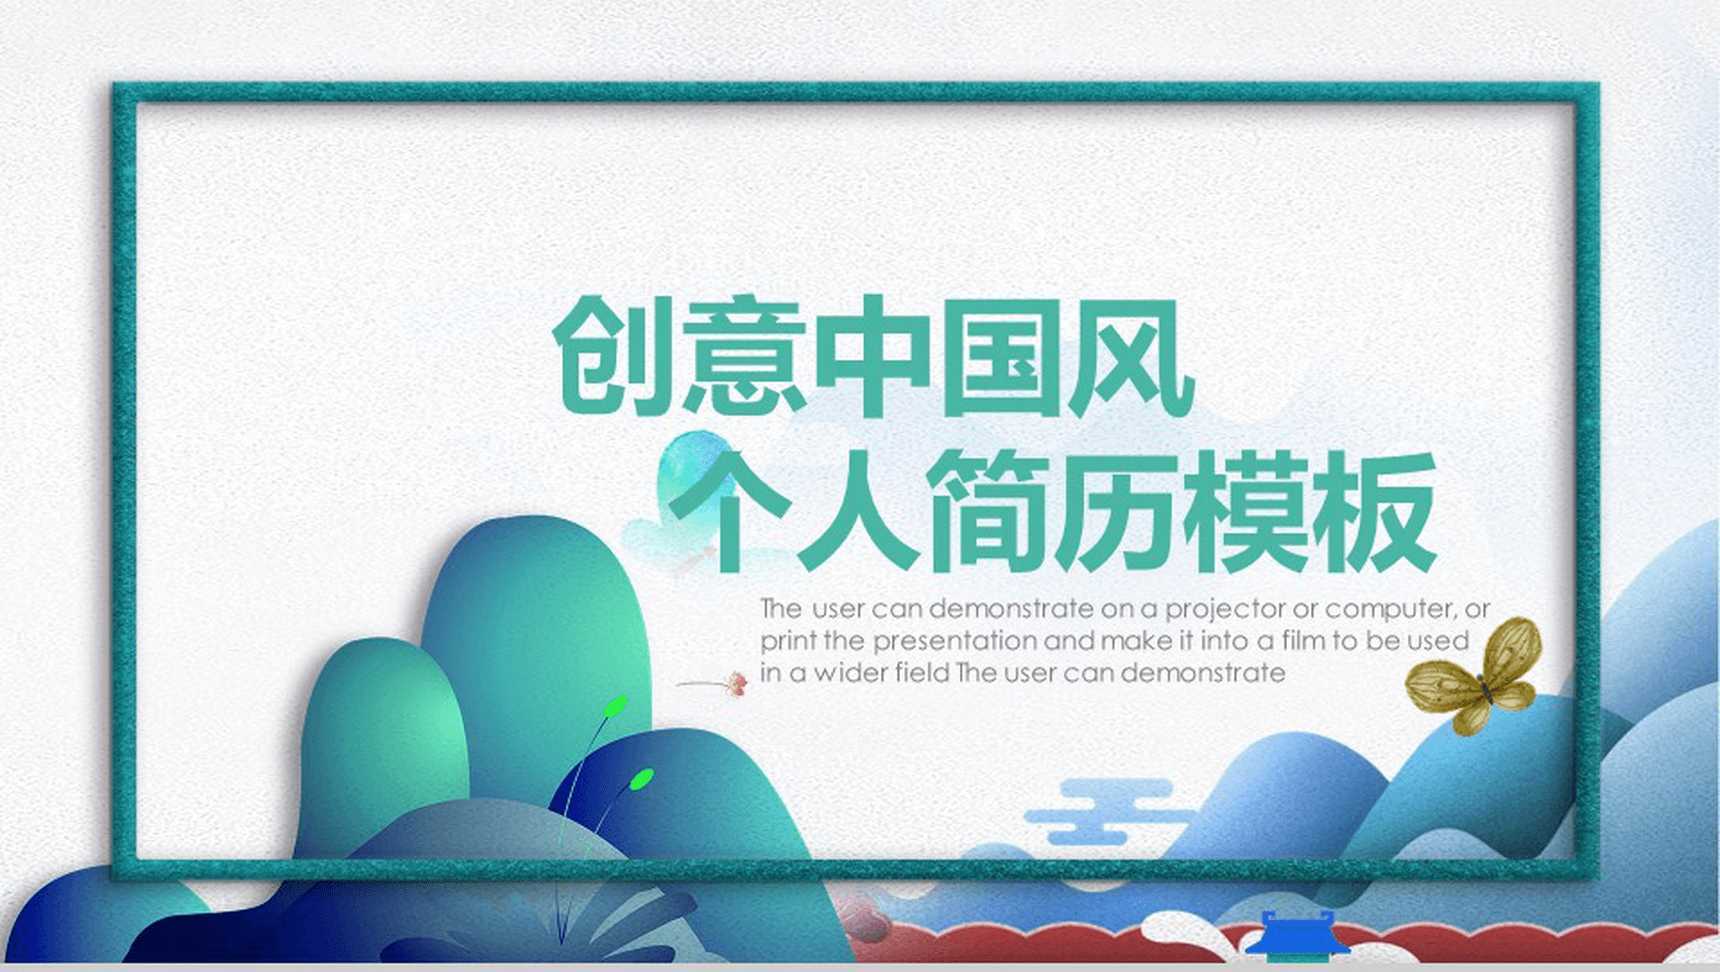 绿色手绘创意中国风个人简历竞聘PPT模板